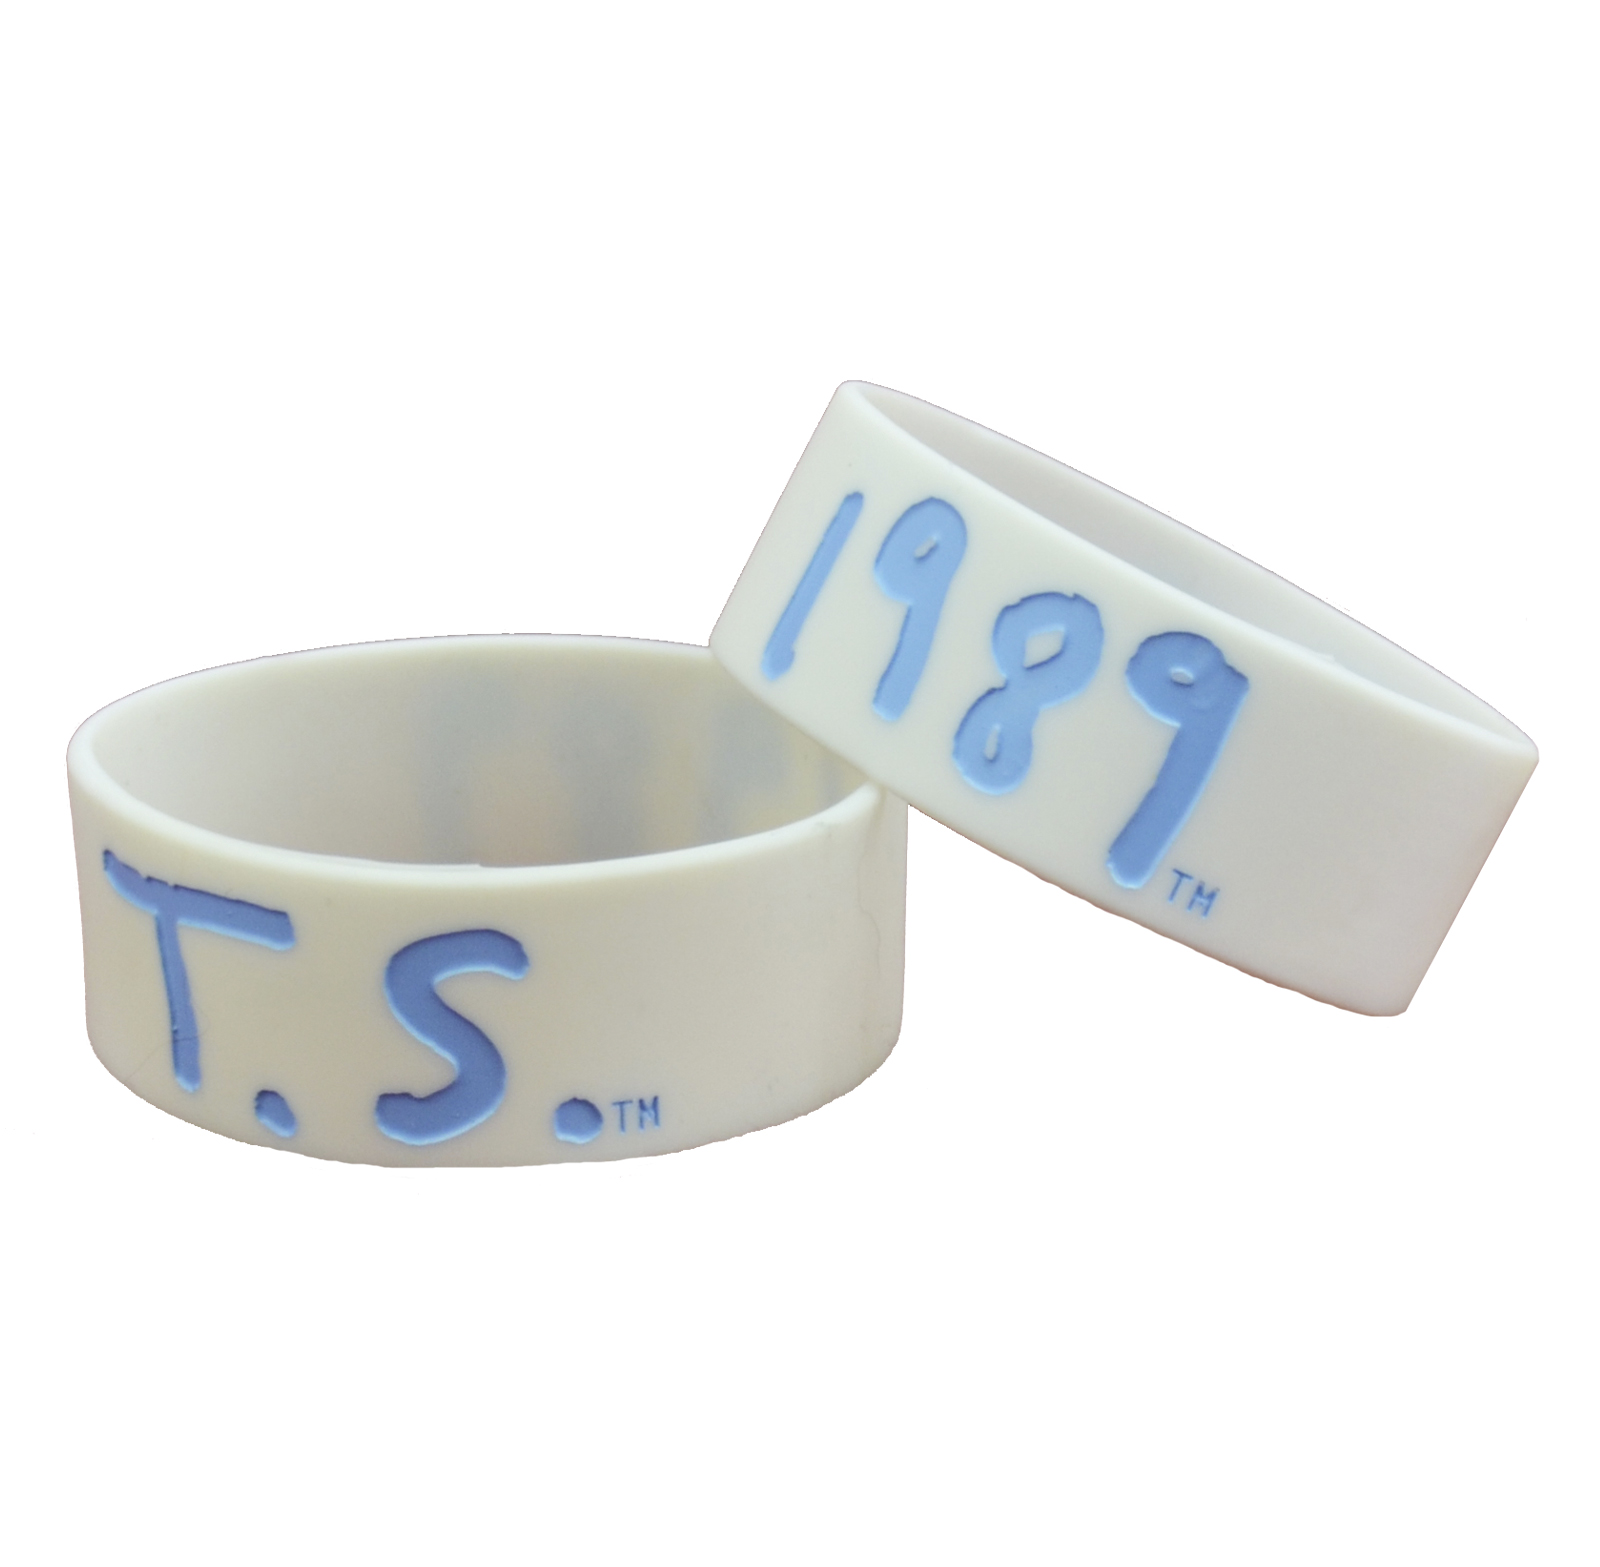 1989 white rubber bracelet